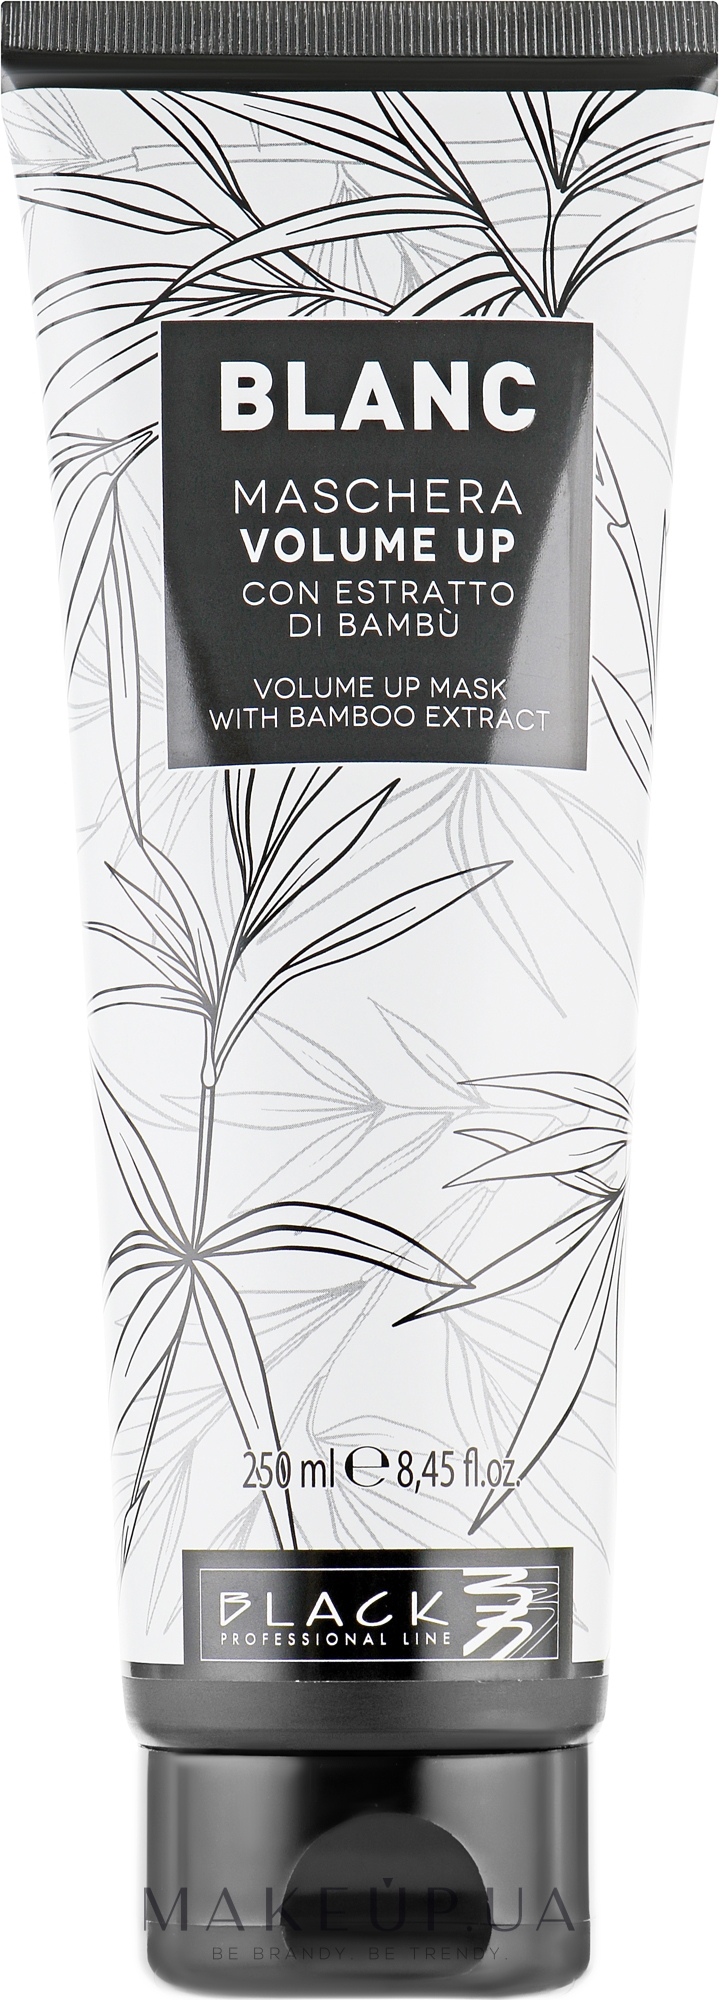 Маска для збільшення об'єму волосся - Black Professional Line Blanc Volume Up Mask — фото 250ml